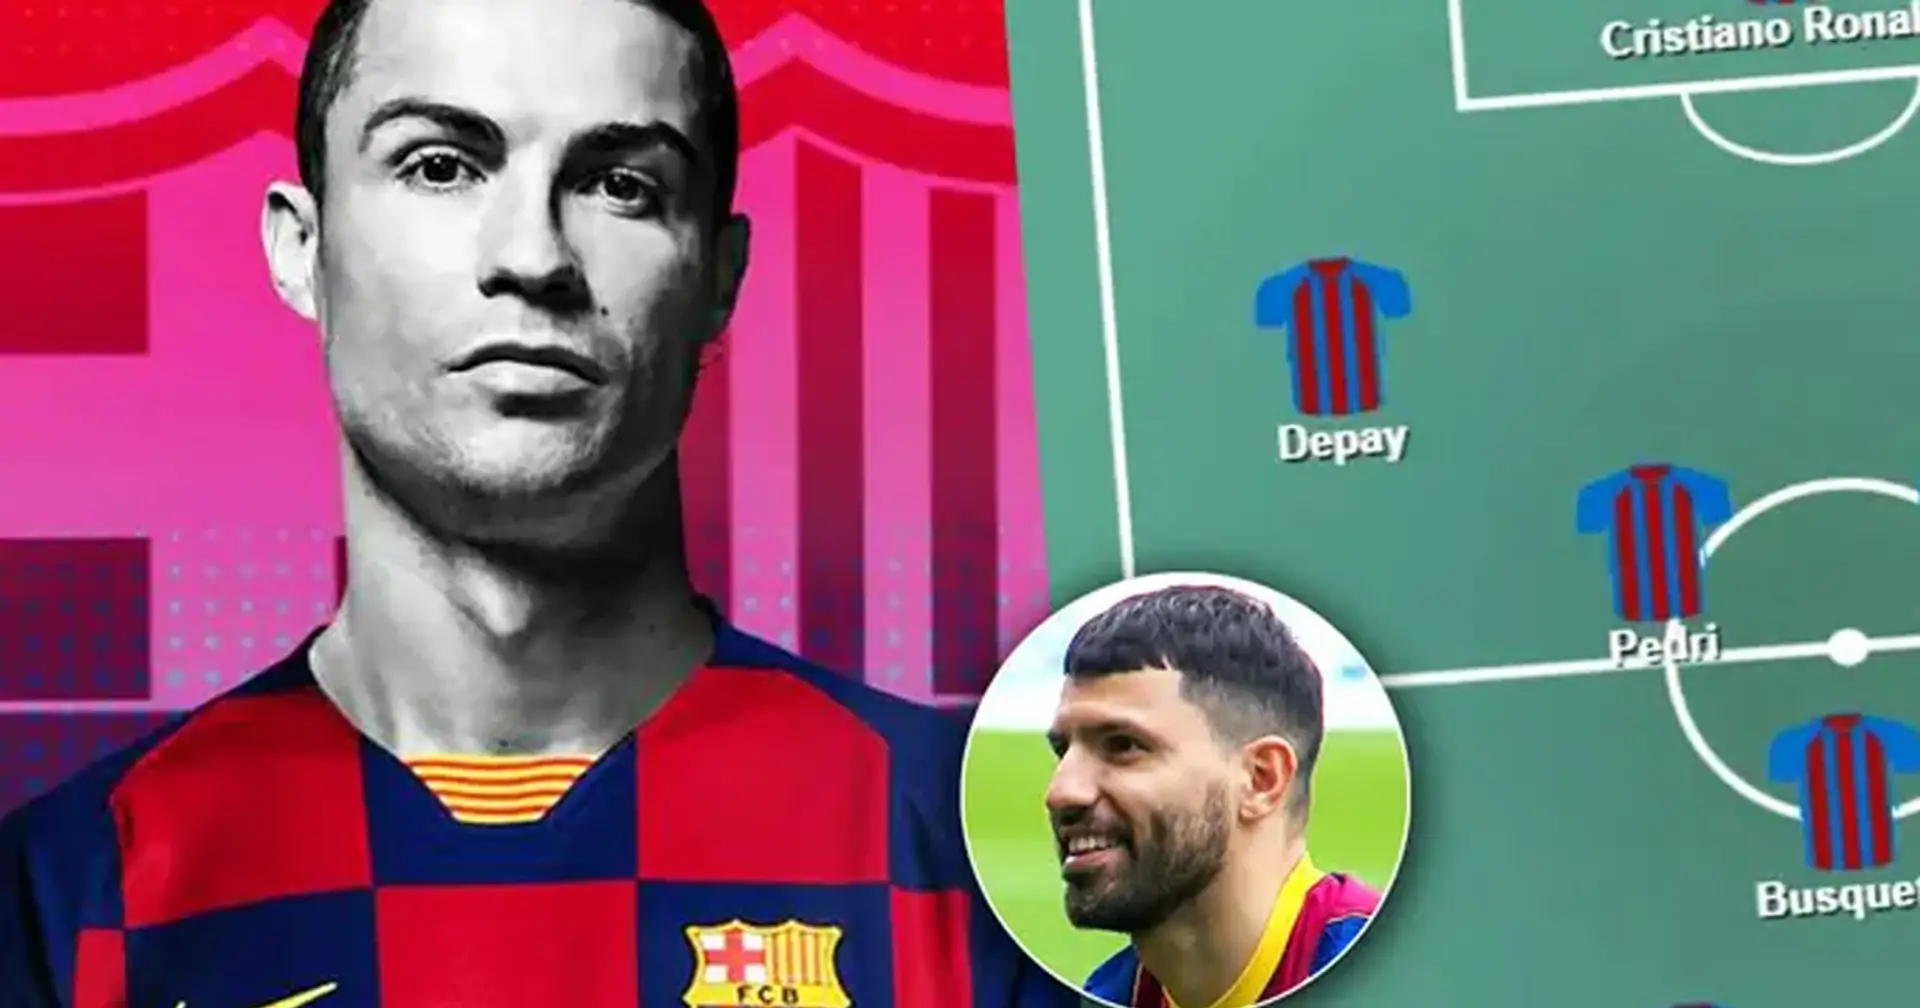 Con 3 superestrellas: la alineación potencial del Barcelona para la próxima temporada se ve realmente increíble